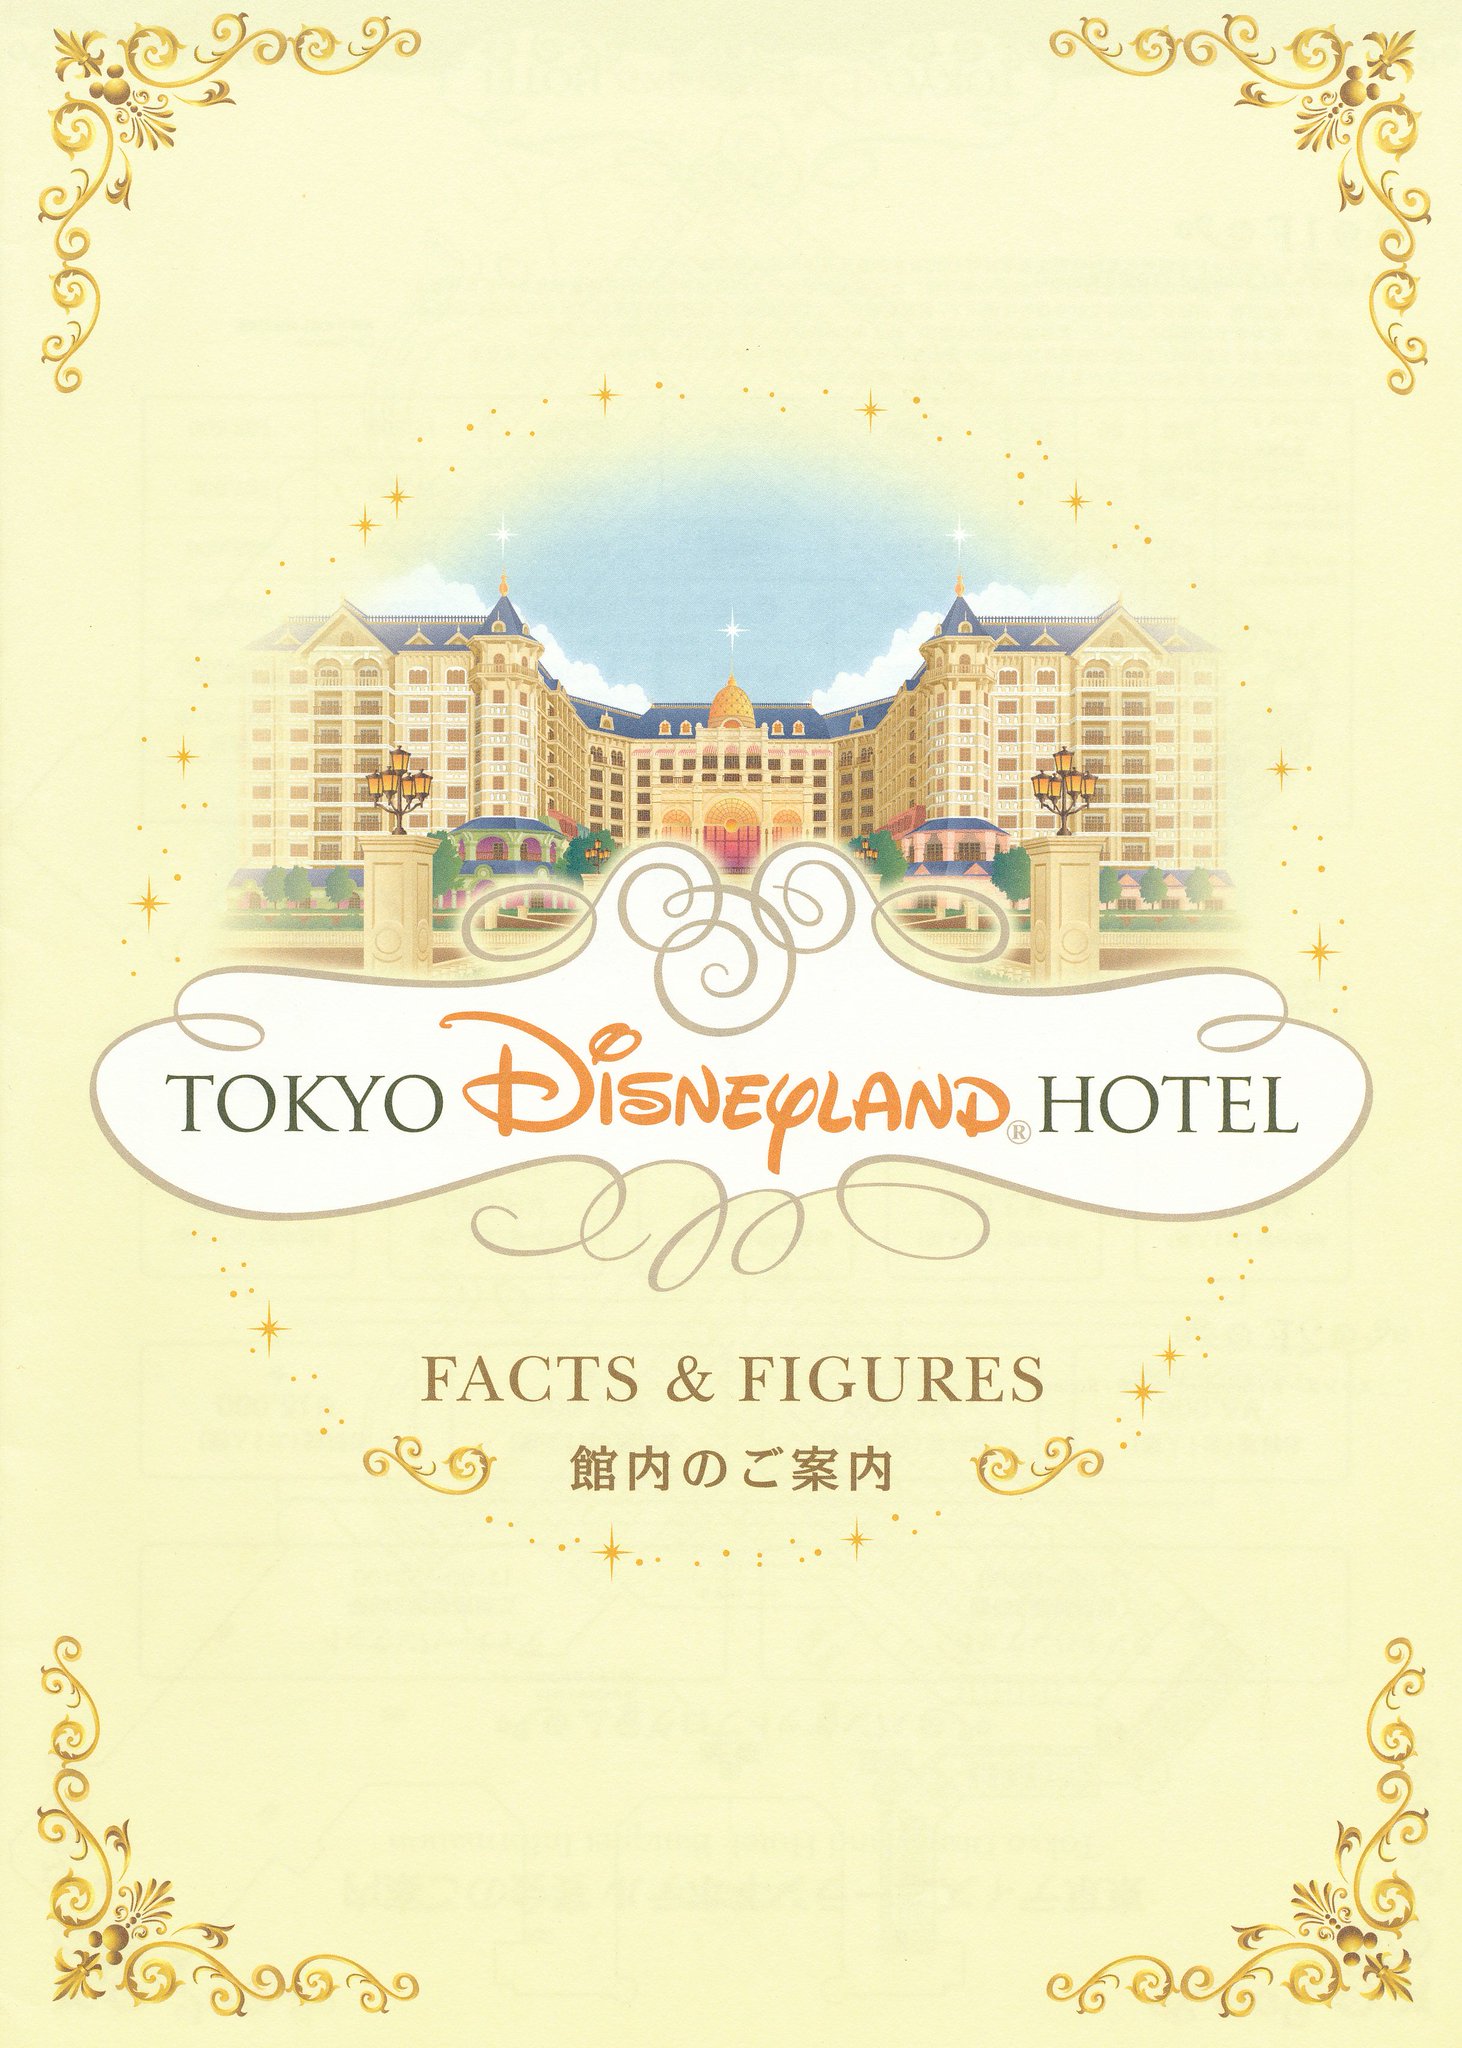 D78 東京ディズニーランドホテル開業時に製作された 館内のご案内 全客室の部屋番号やレストランなど館内のほぼ全施設の情報が網羅されています Tdr History